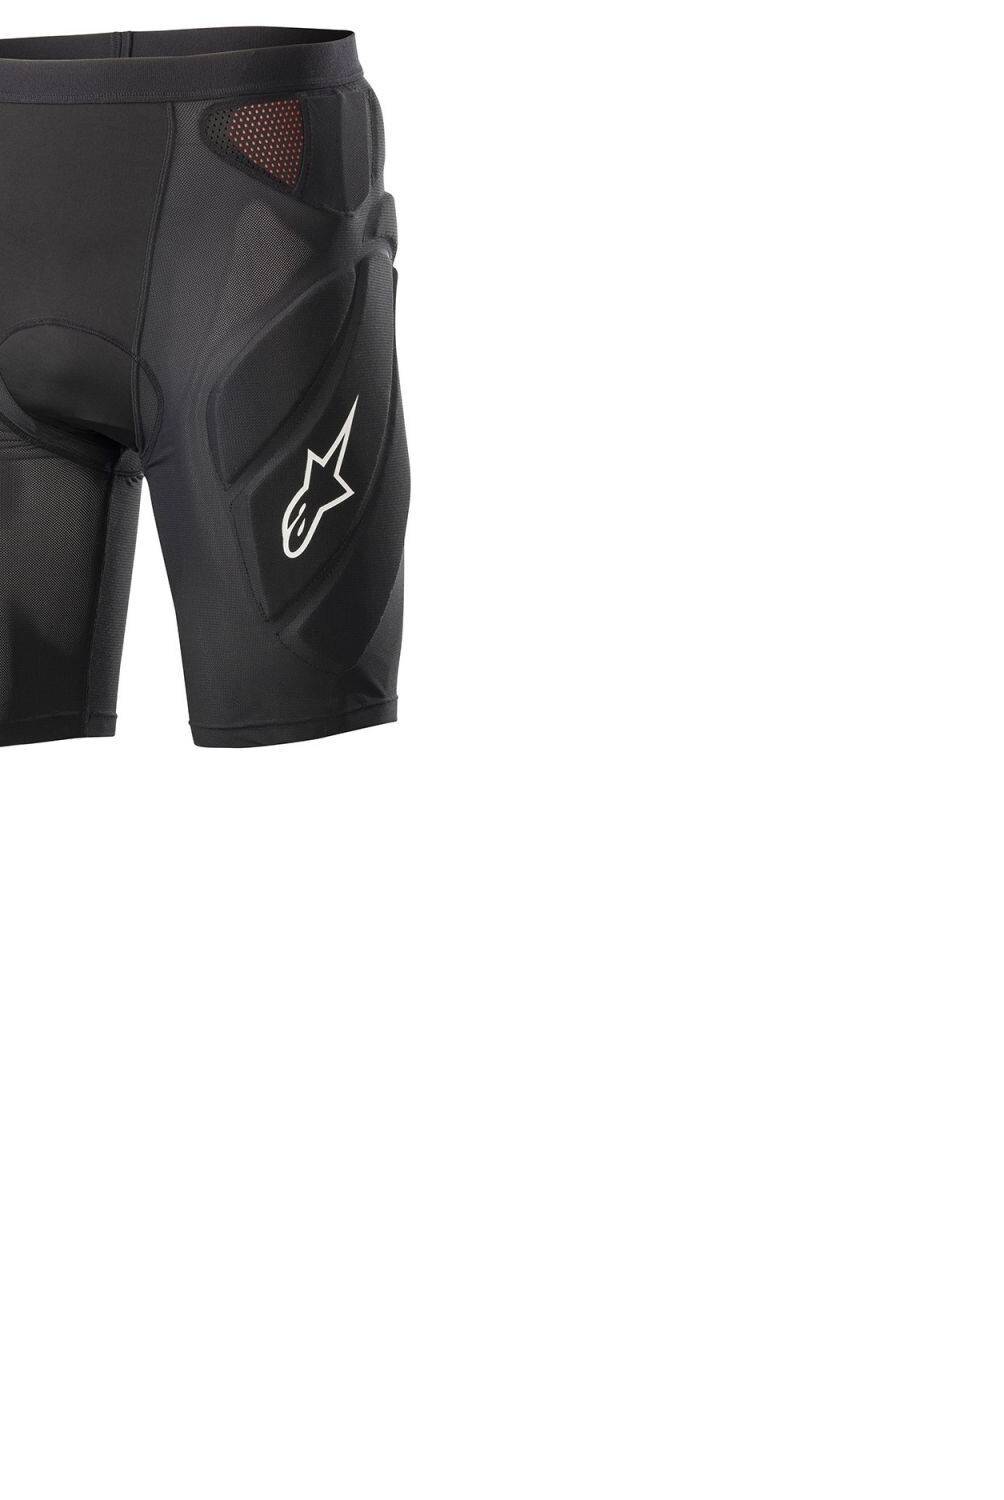 Alpinestars - Vector Tech Shorts Black